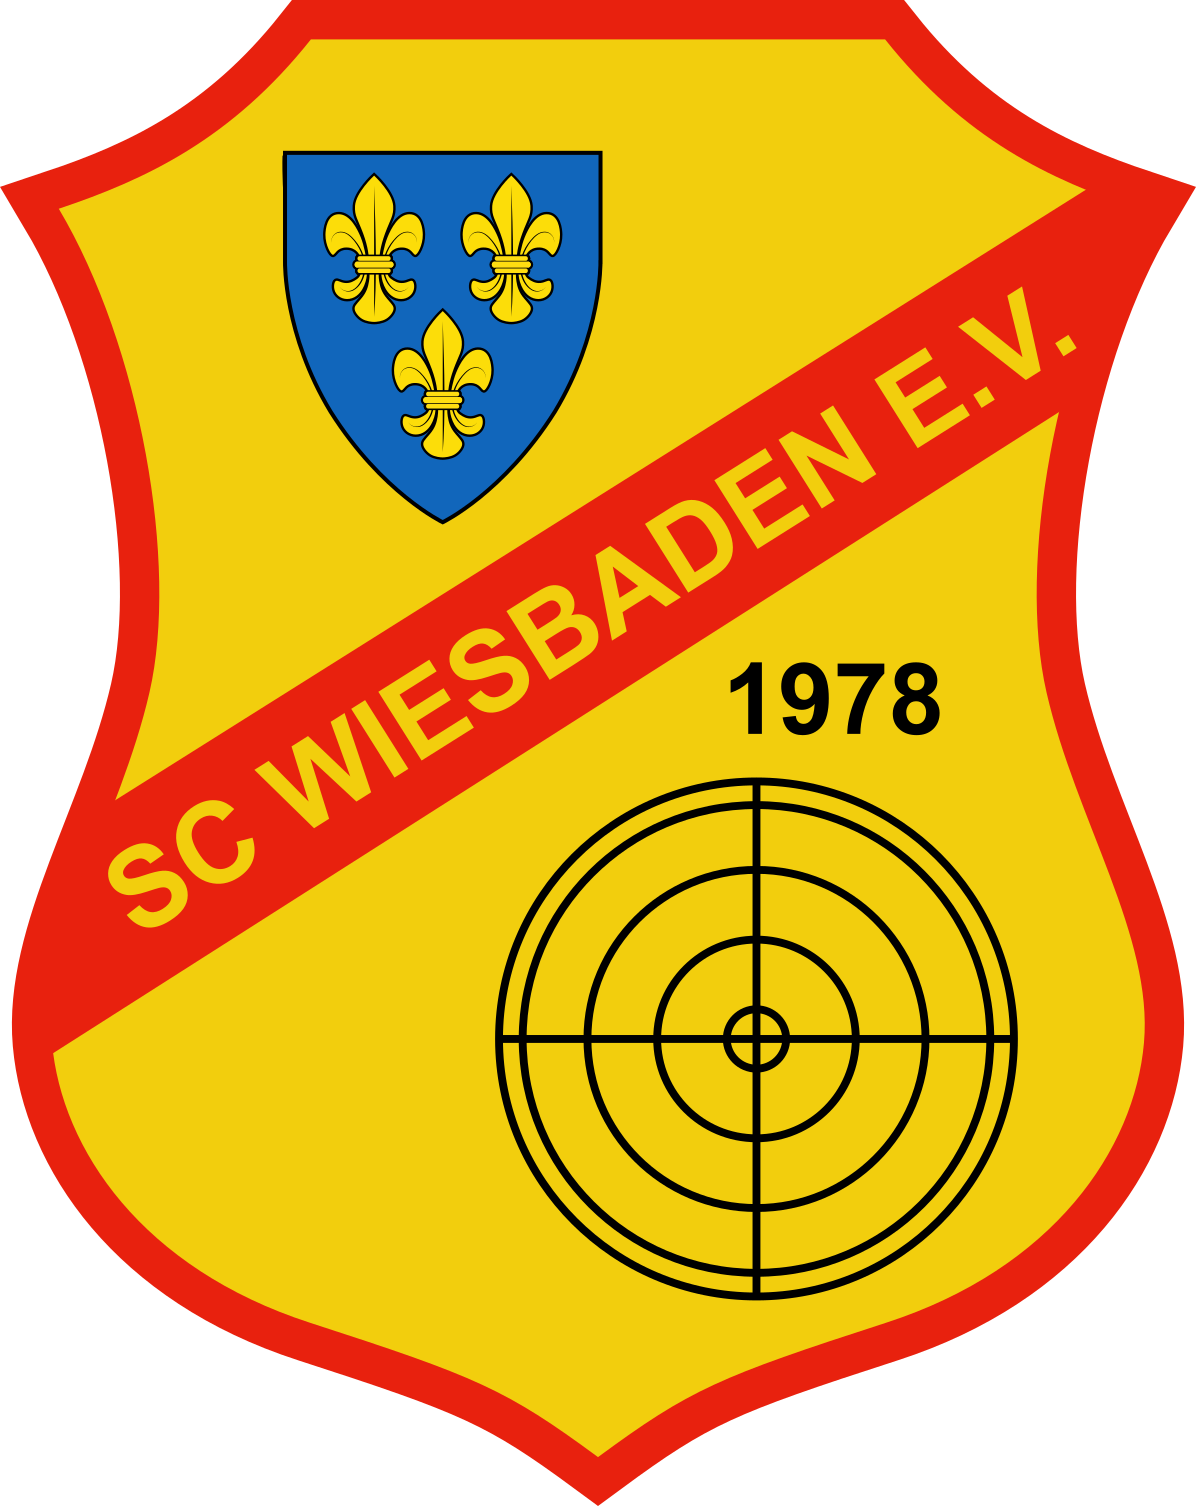 Schützenclub Wiesbaden 1978 e.V.